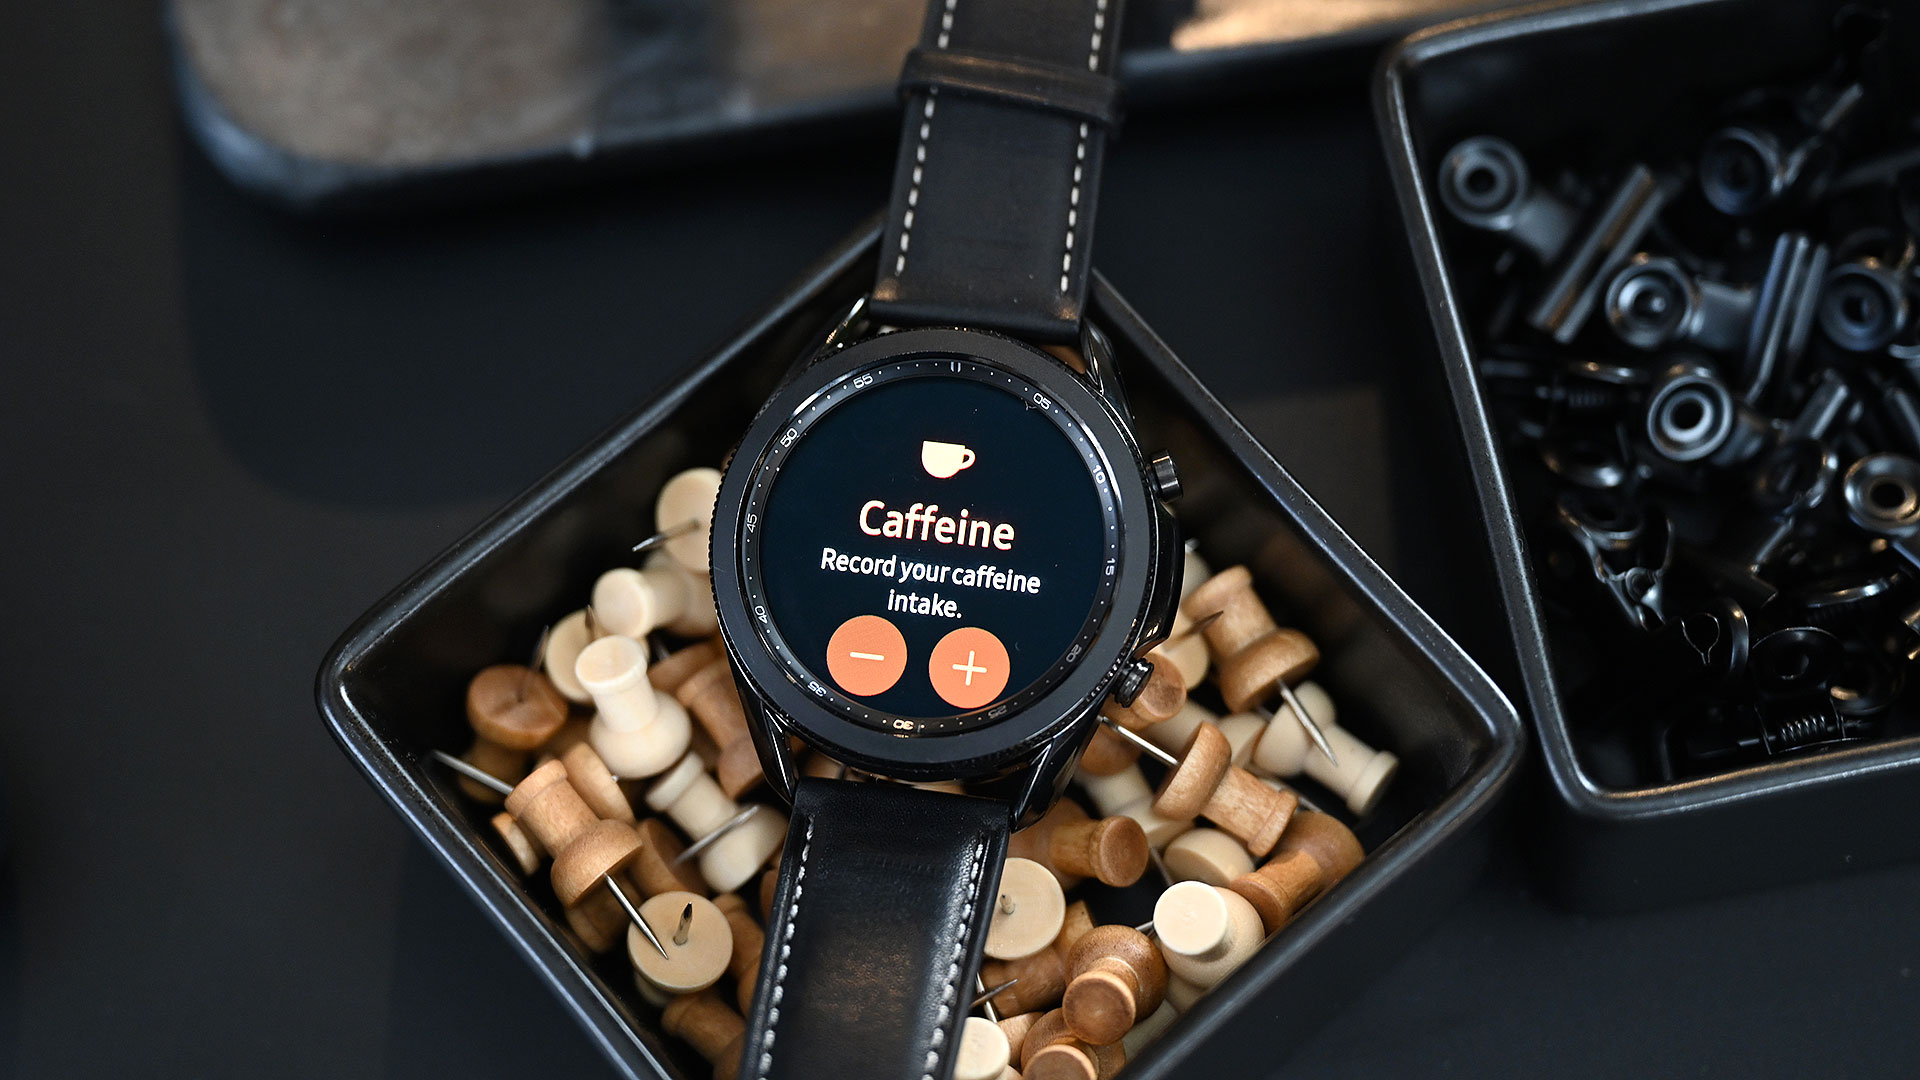 Galaxy Watch 3 ganhou novas funções de saúde, como monitorar até consumo de cafeína. Crédito: Sam Rutherford/Gizmodo